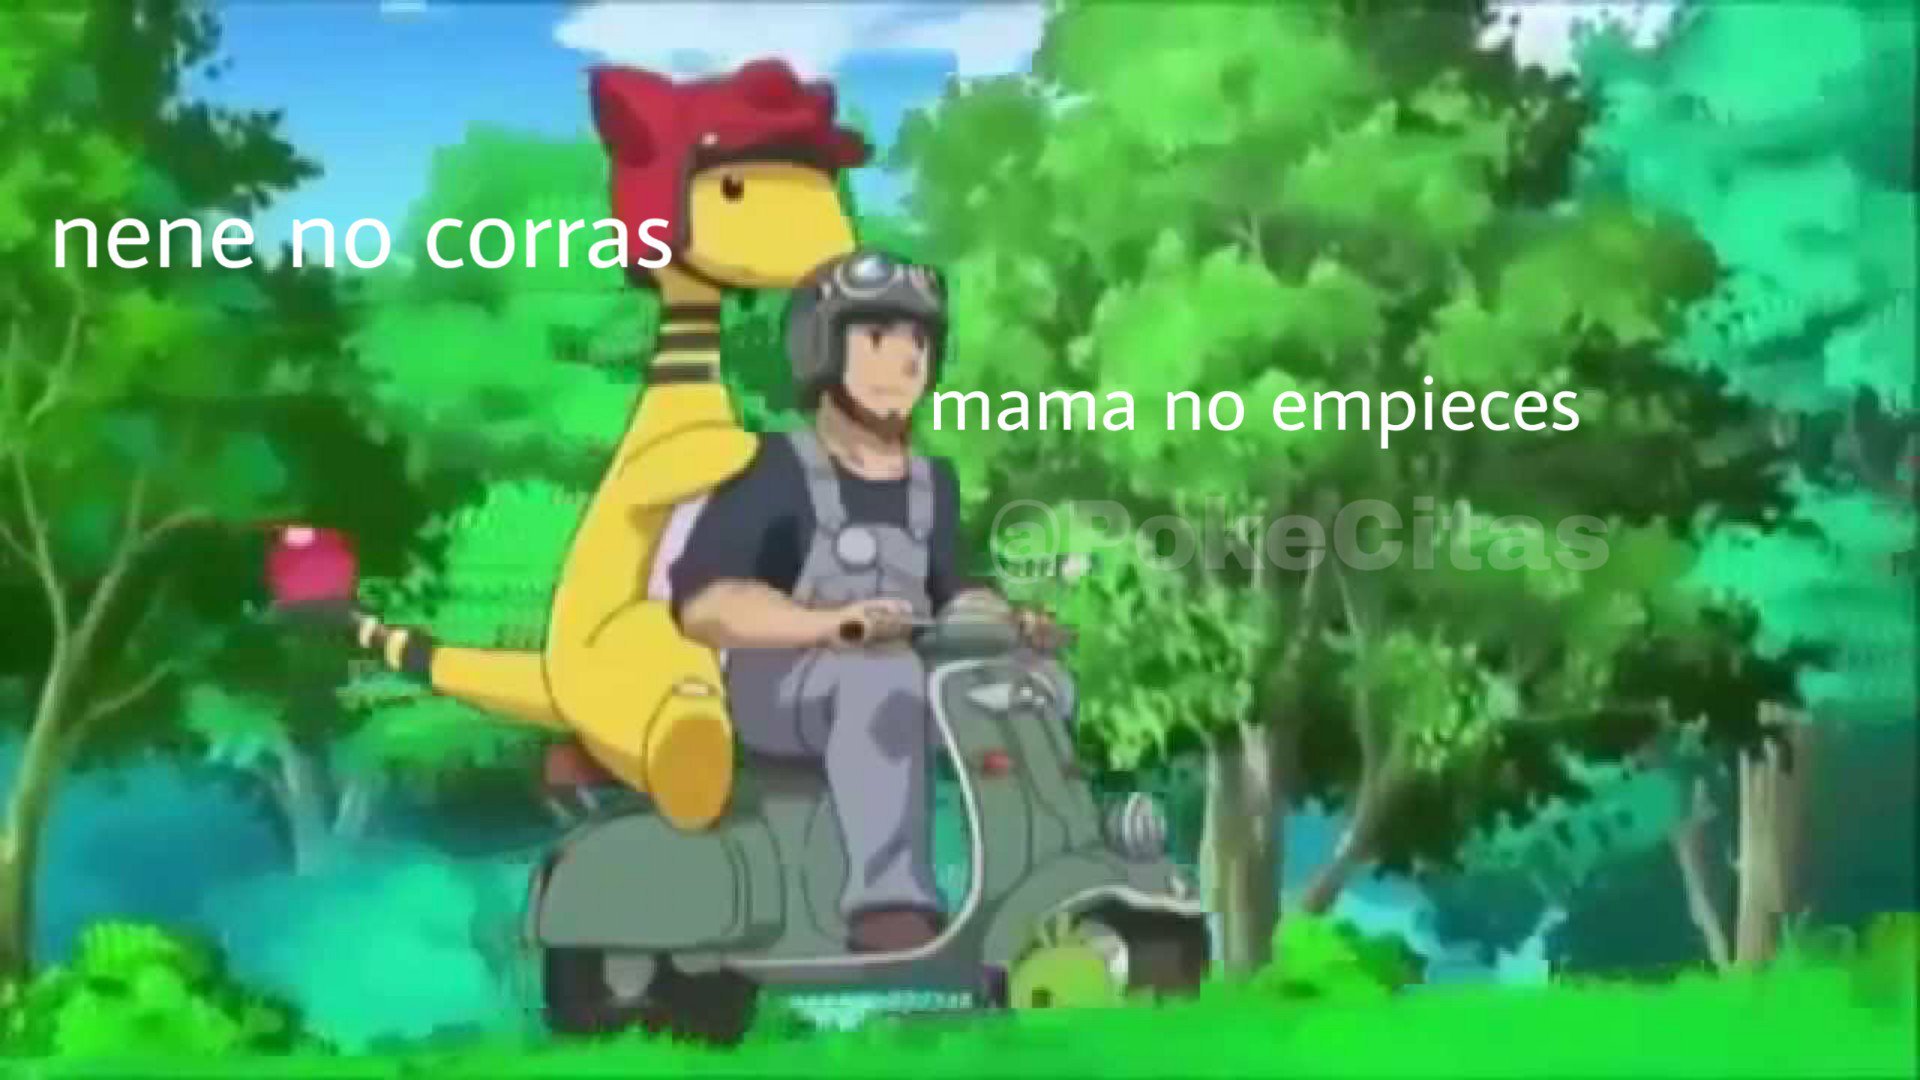 mama no empiece - meme